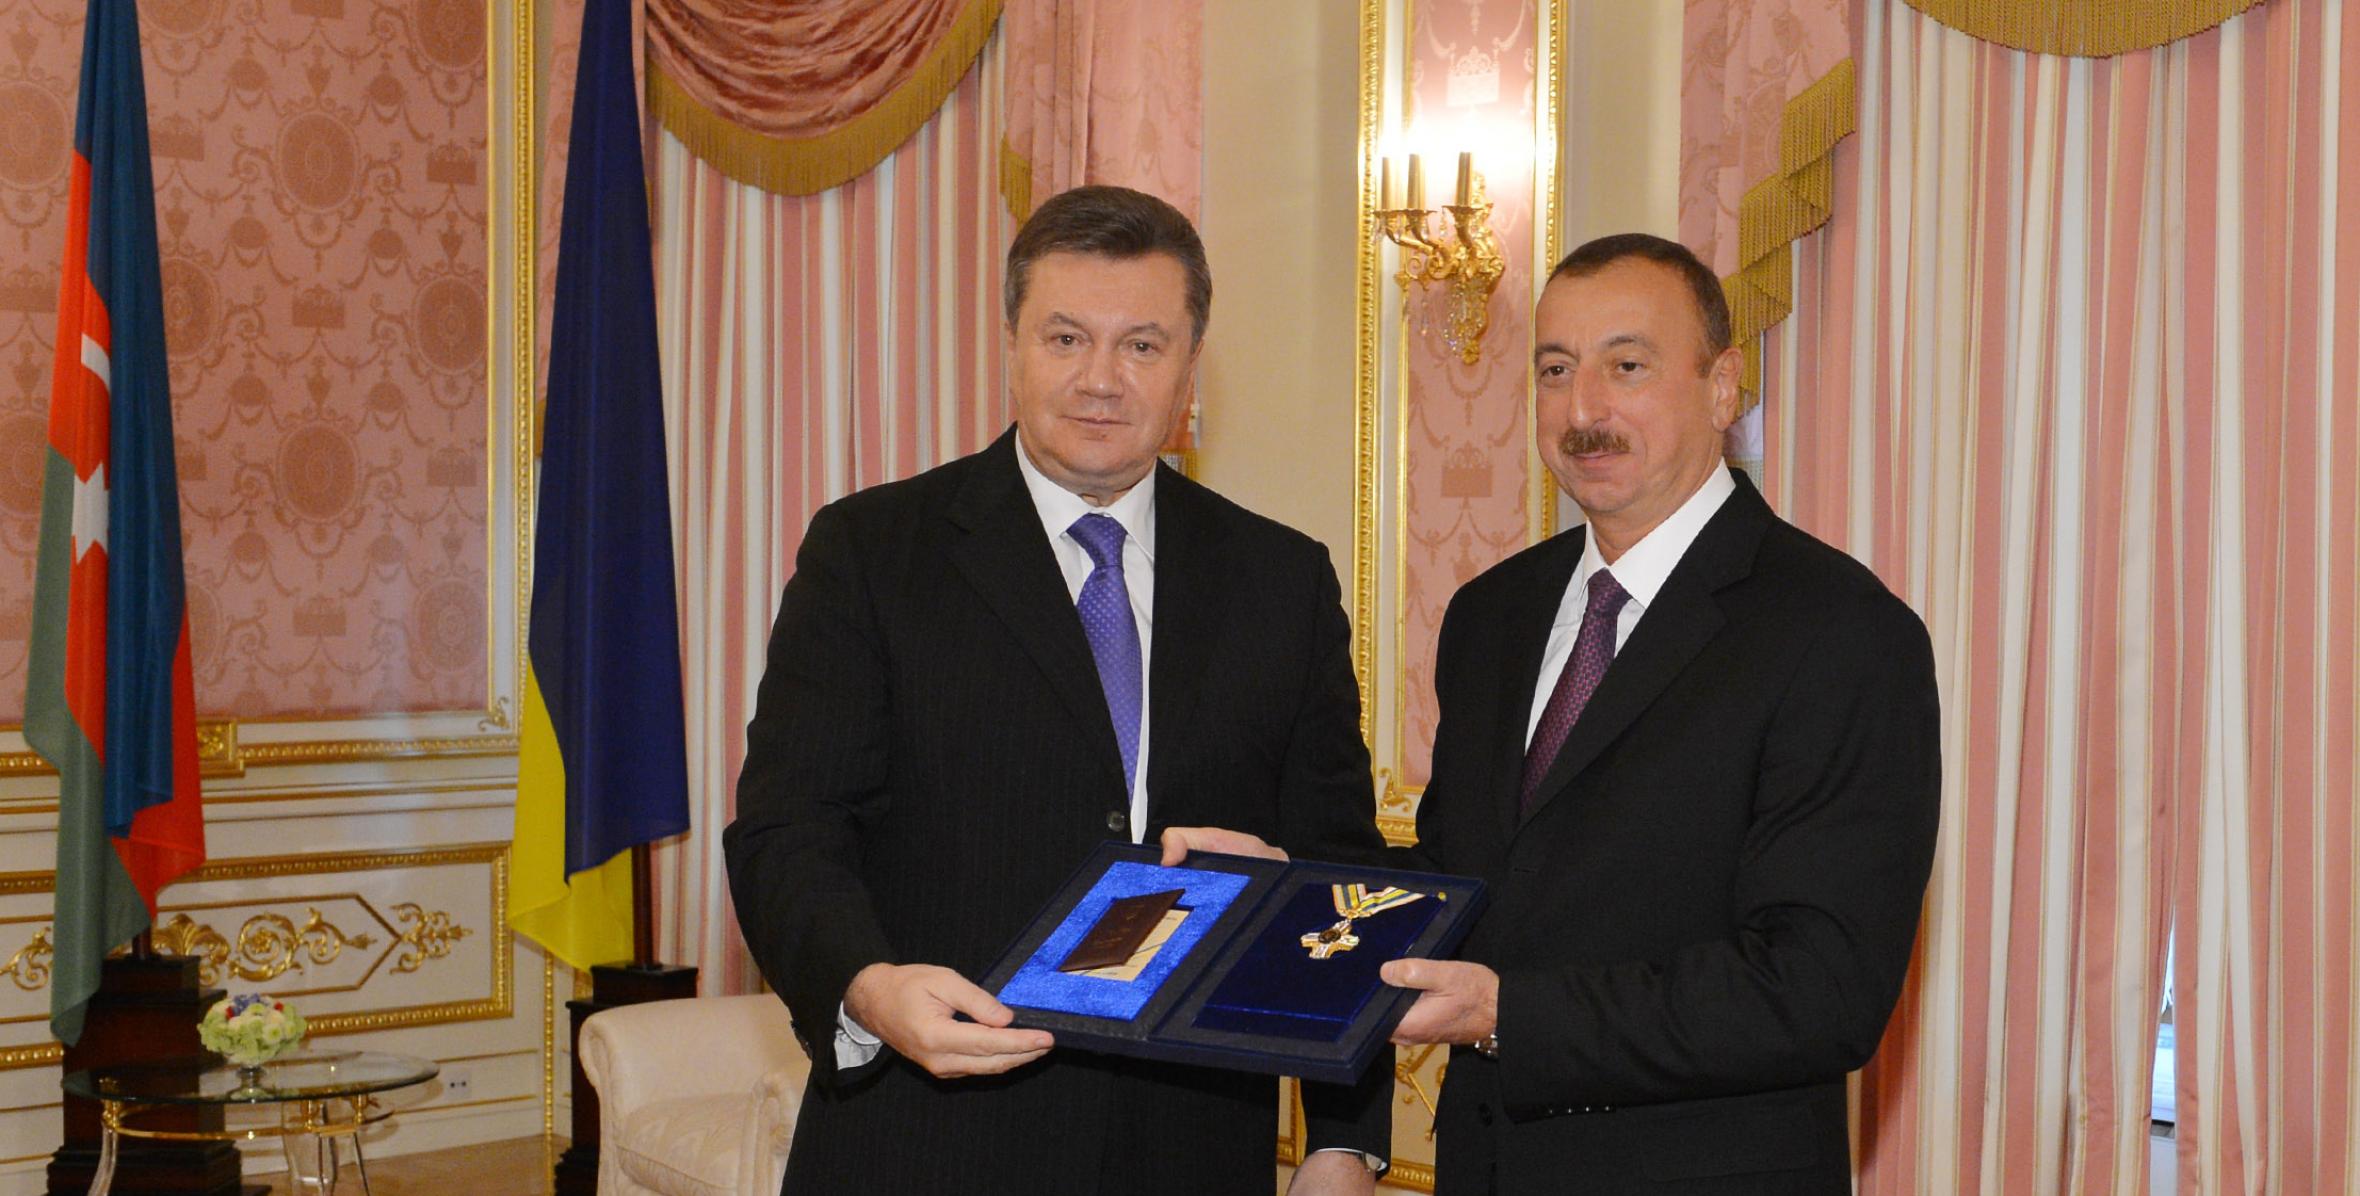 Состоялась церемония награждения президентов Азербайджана и Украины